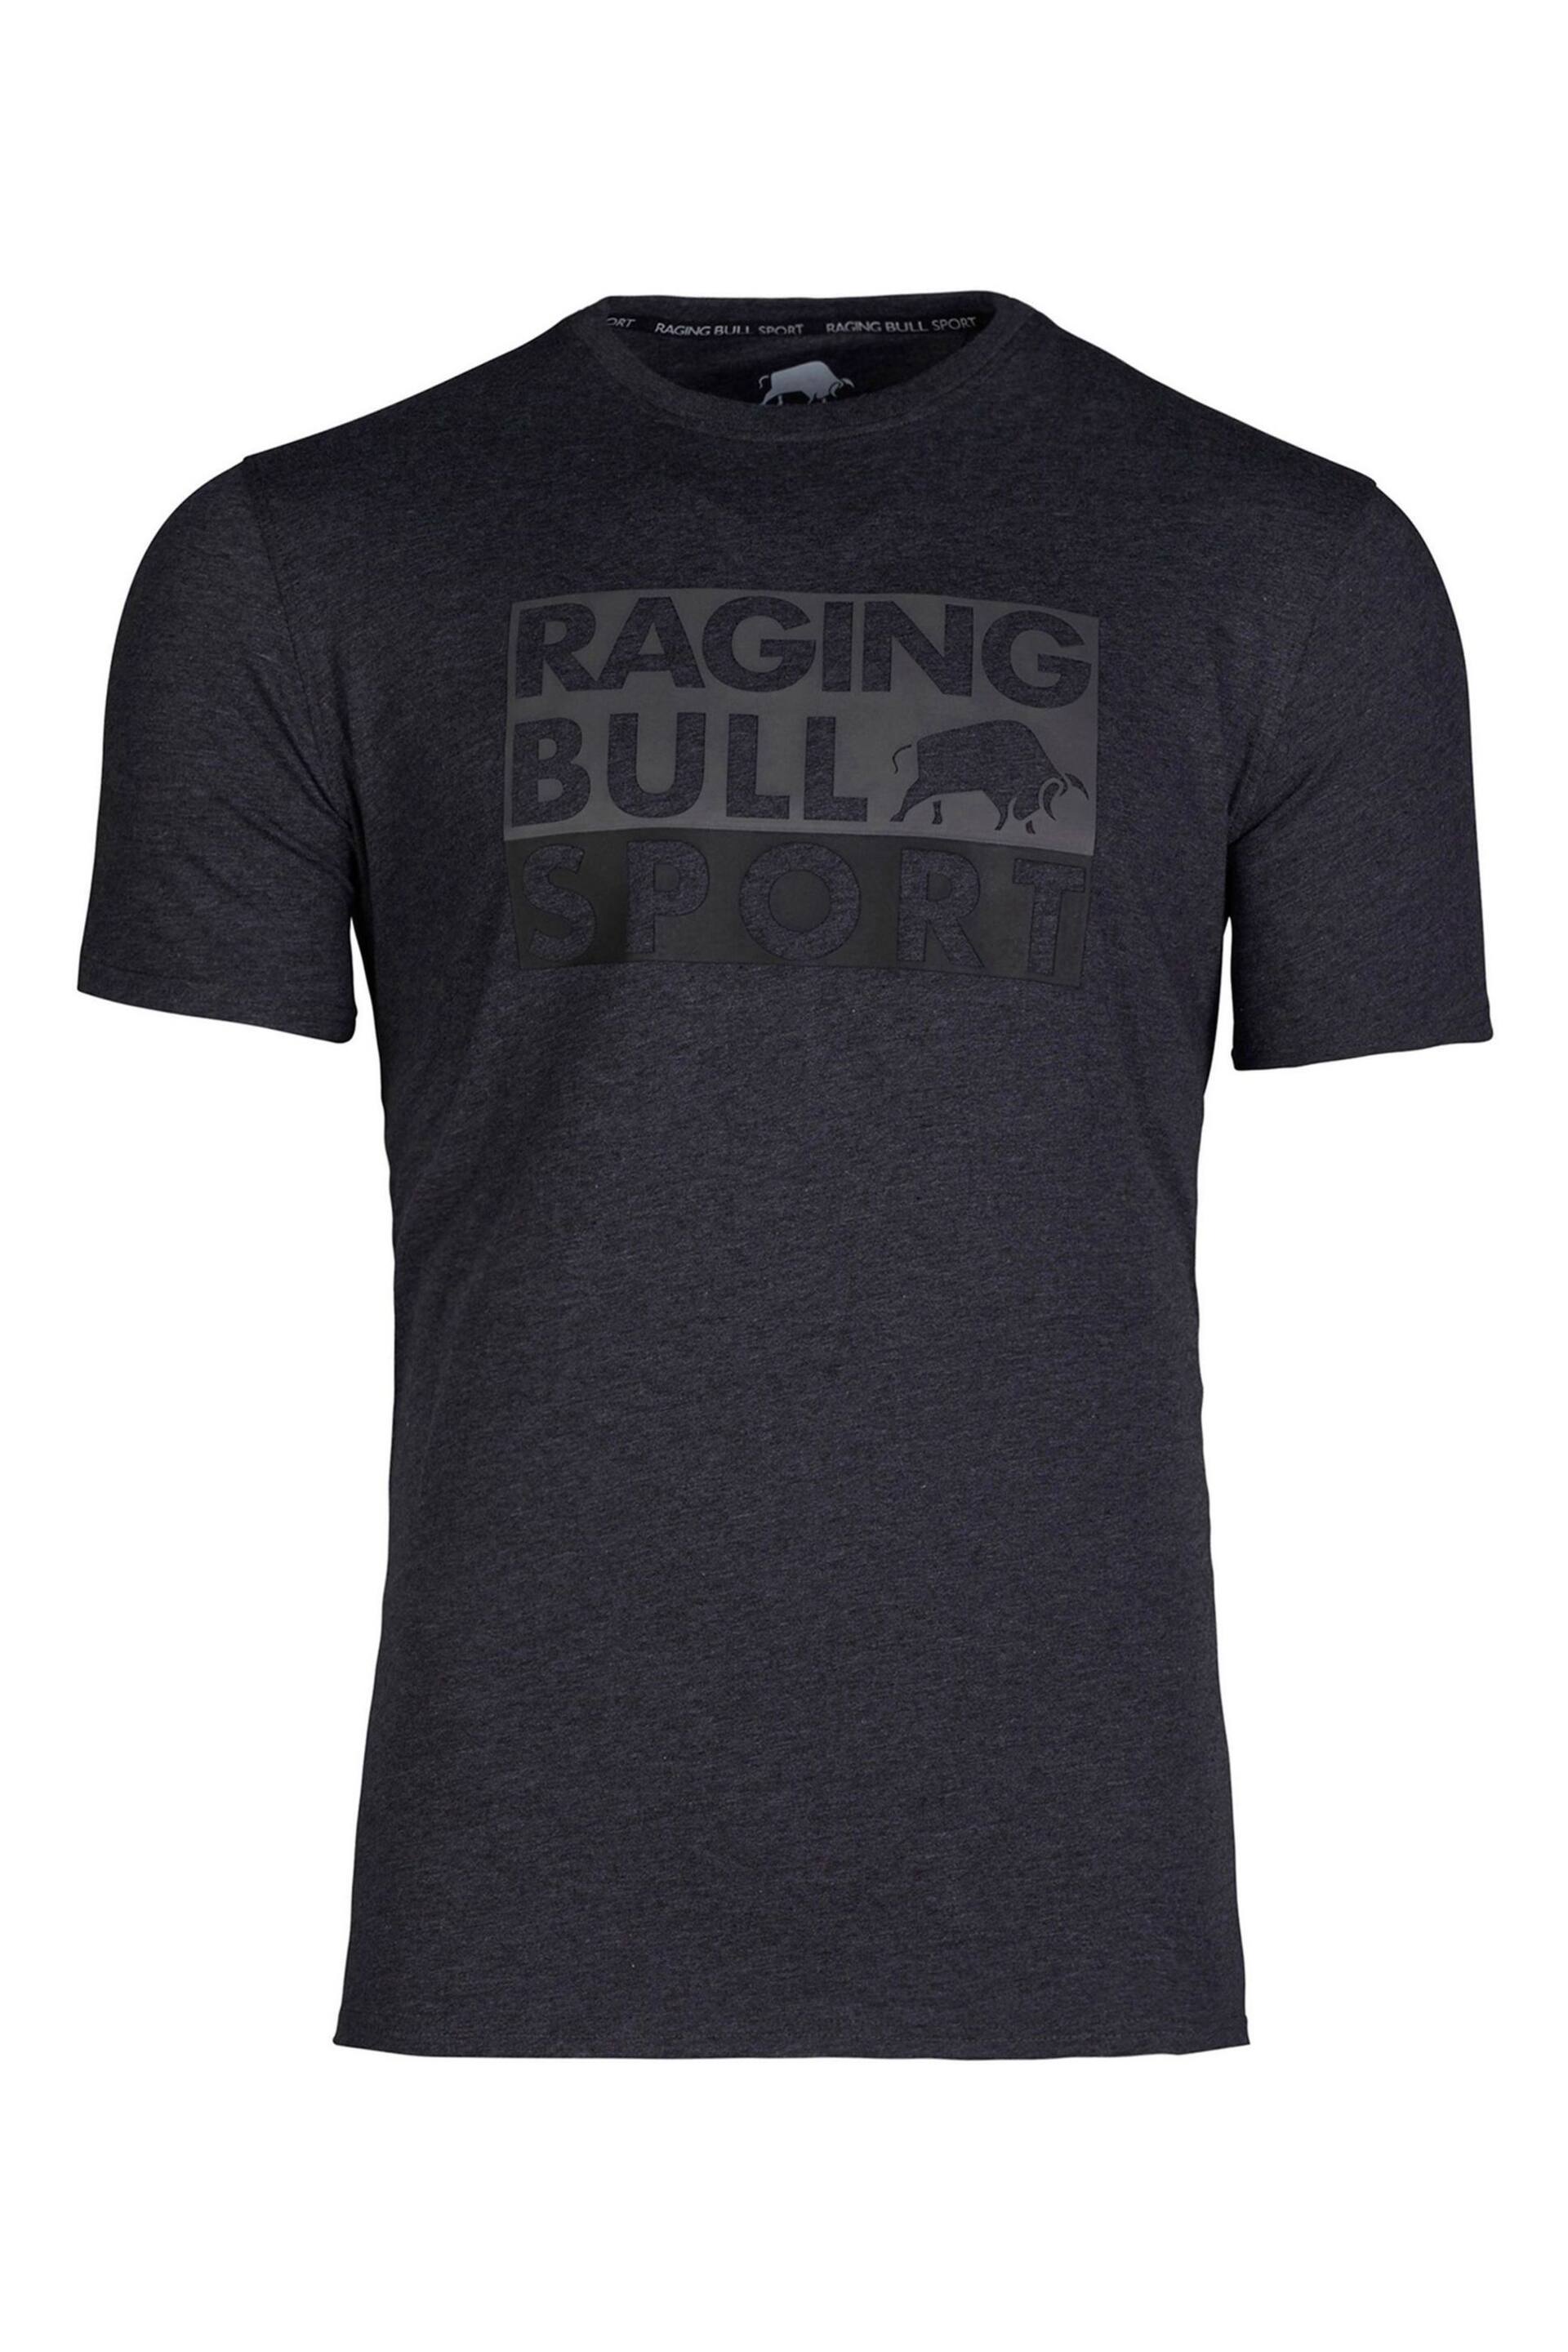 Raging Bull Grey Sport Block T-Shirt - Image 4 of 4